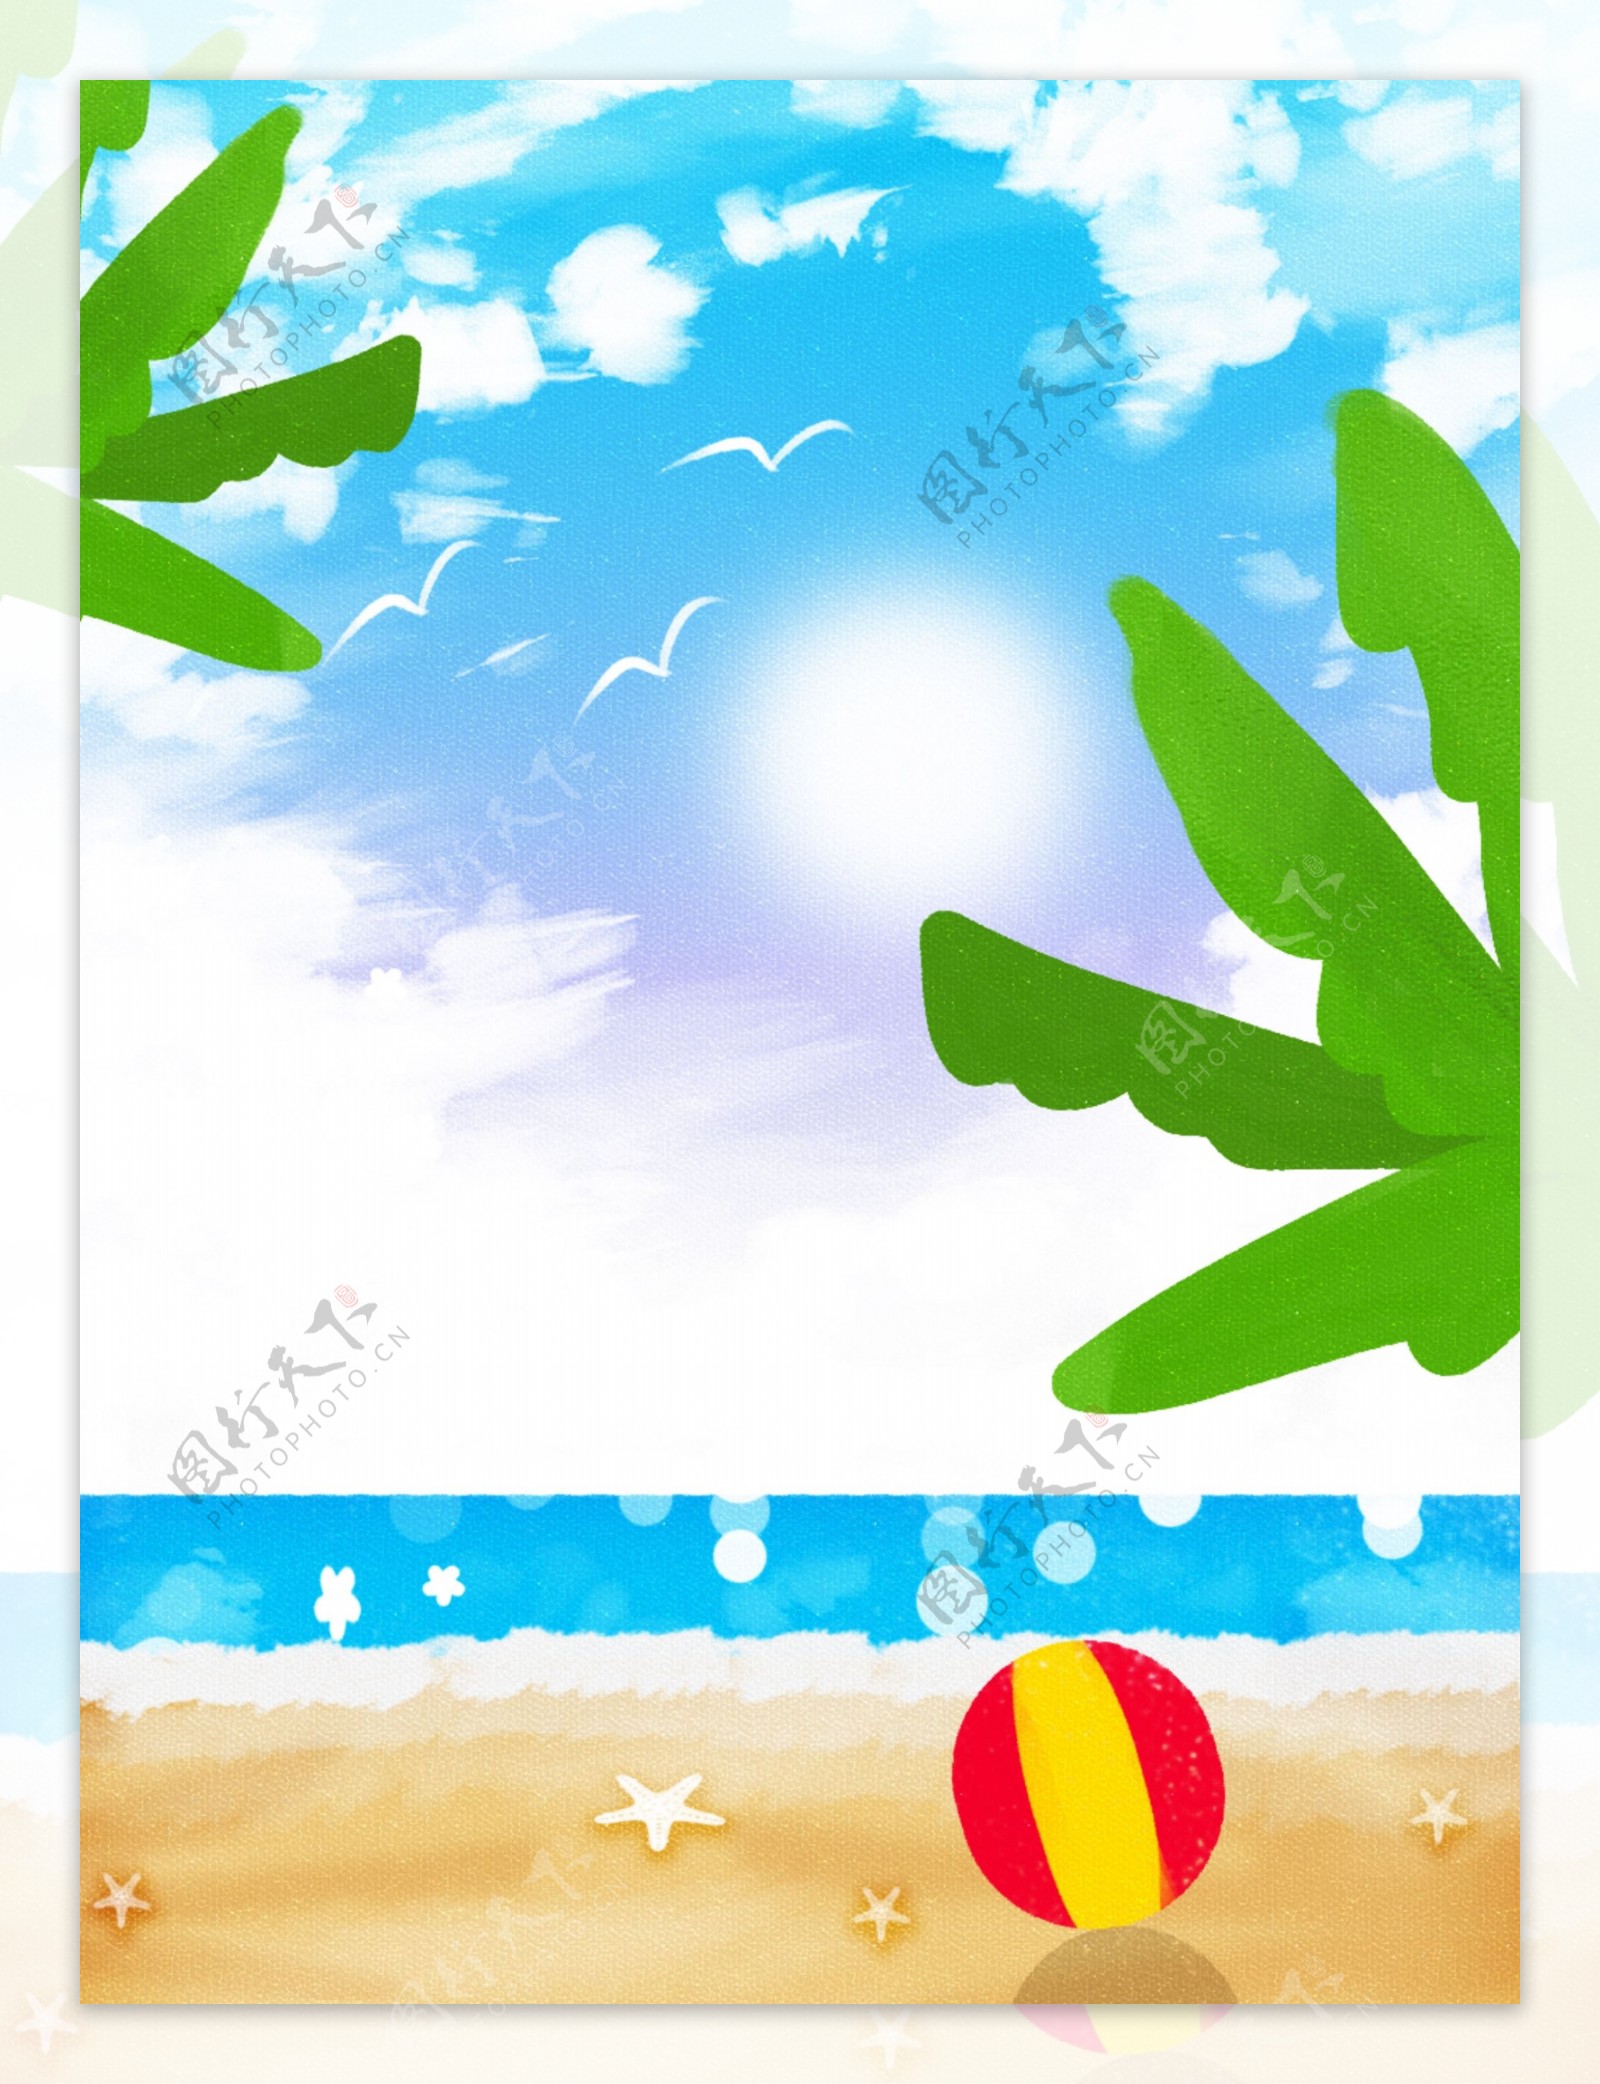 原创小清新手绘夏天海边度假背景